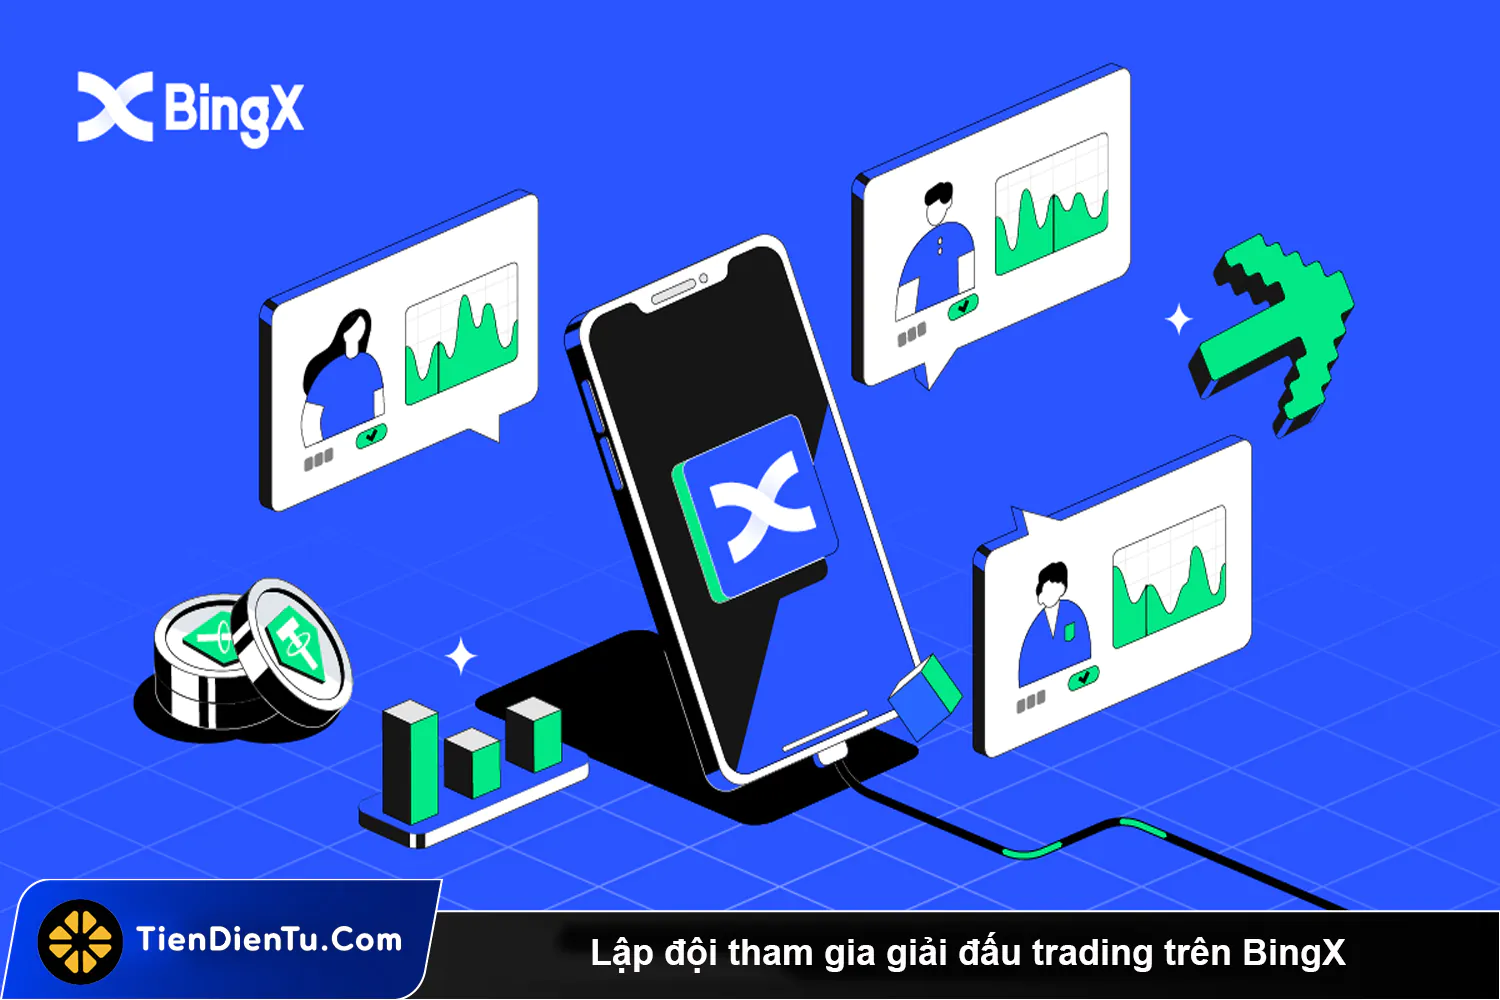 Lap doi tham gia giai dau trading tren BingX